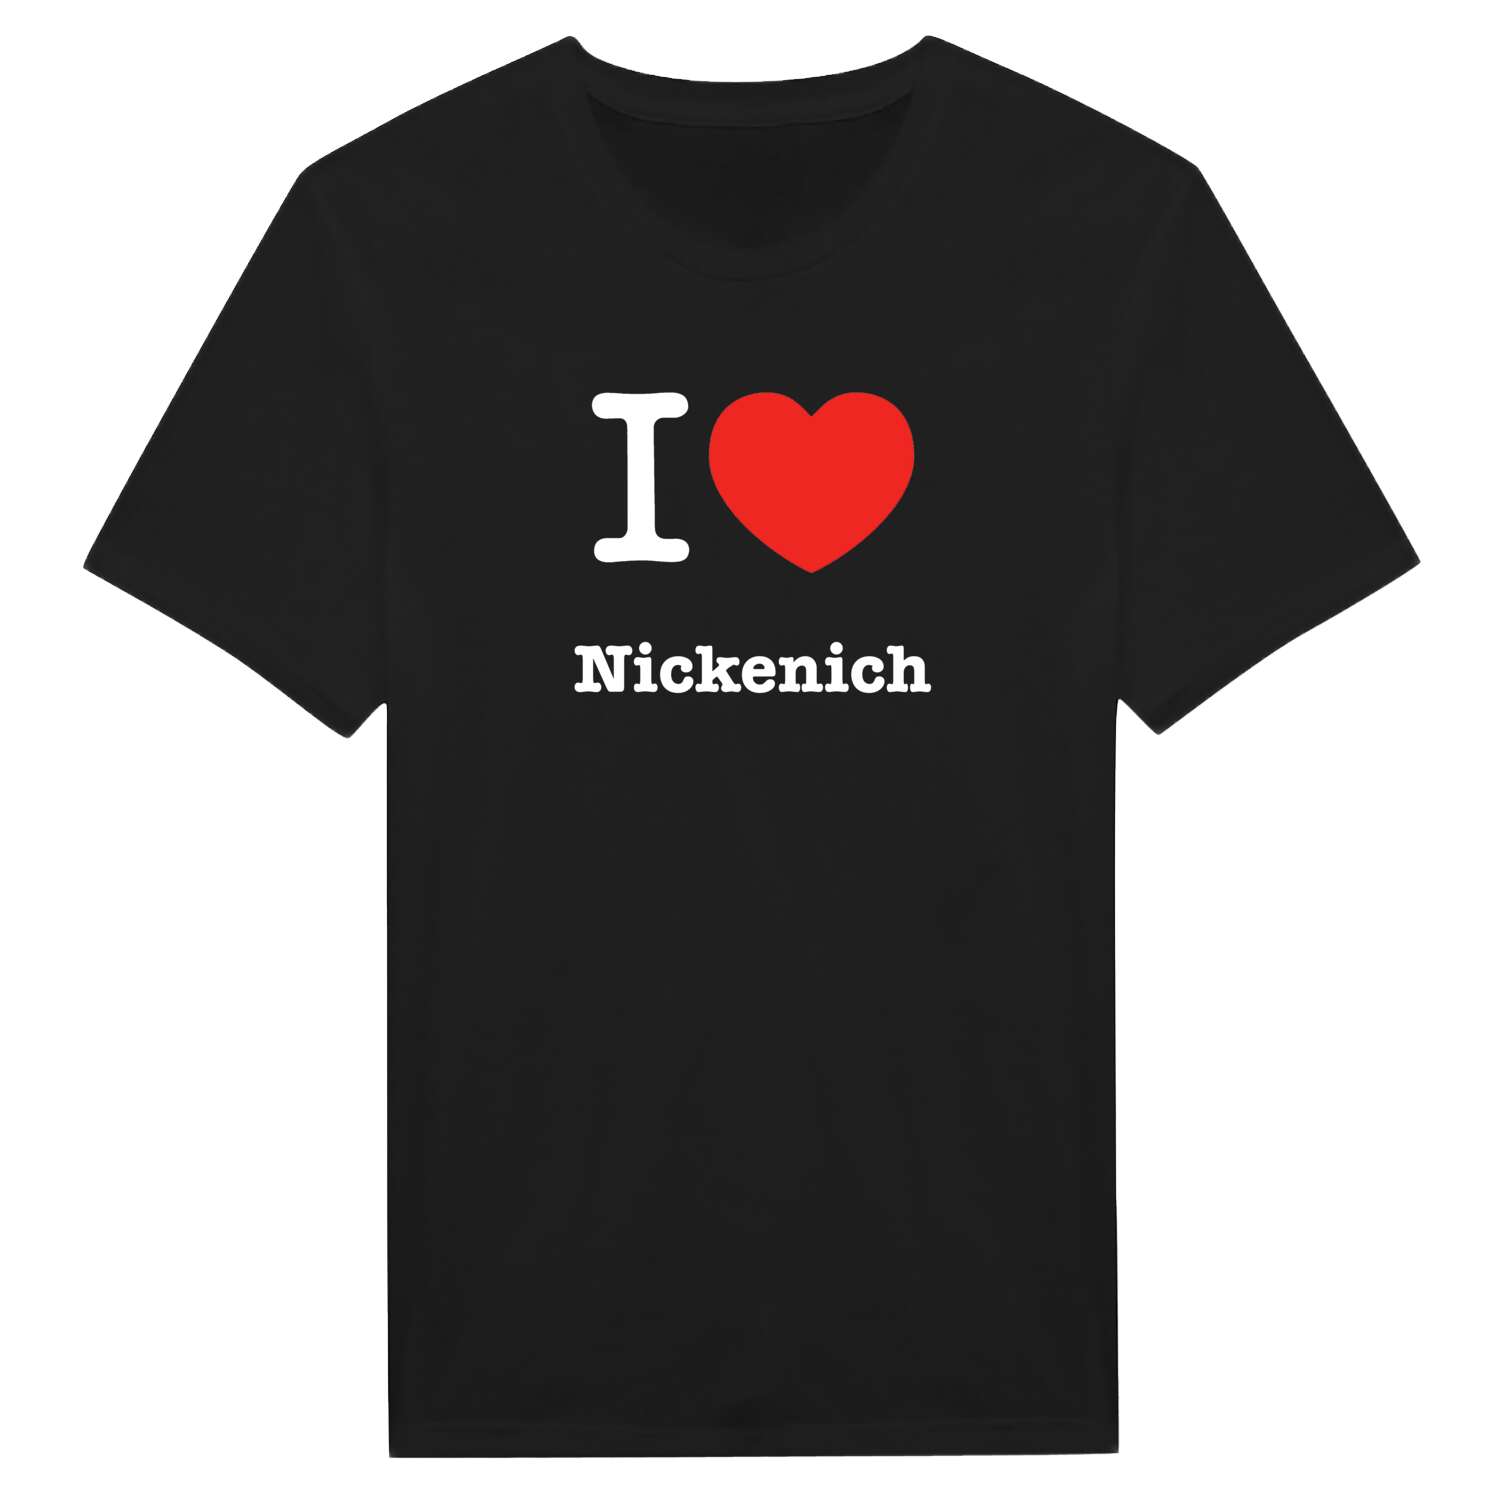 Nickenich T-Shirt »I love«